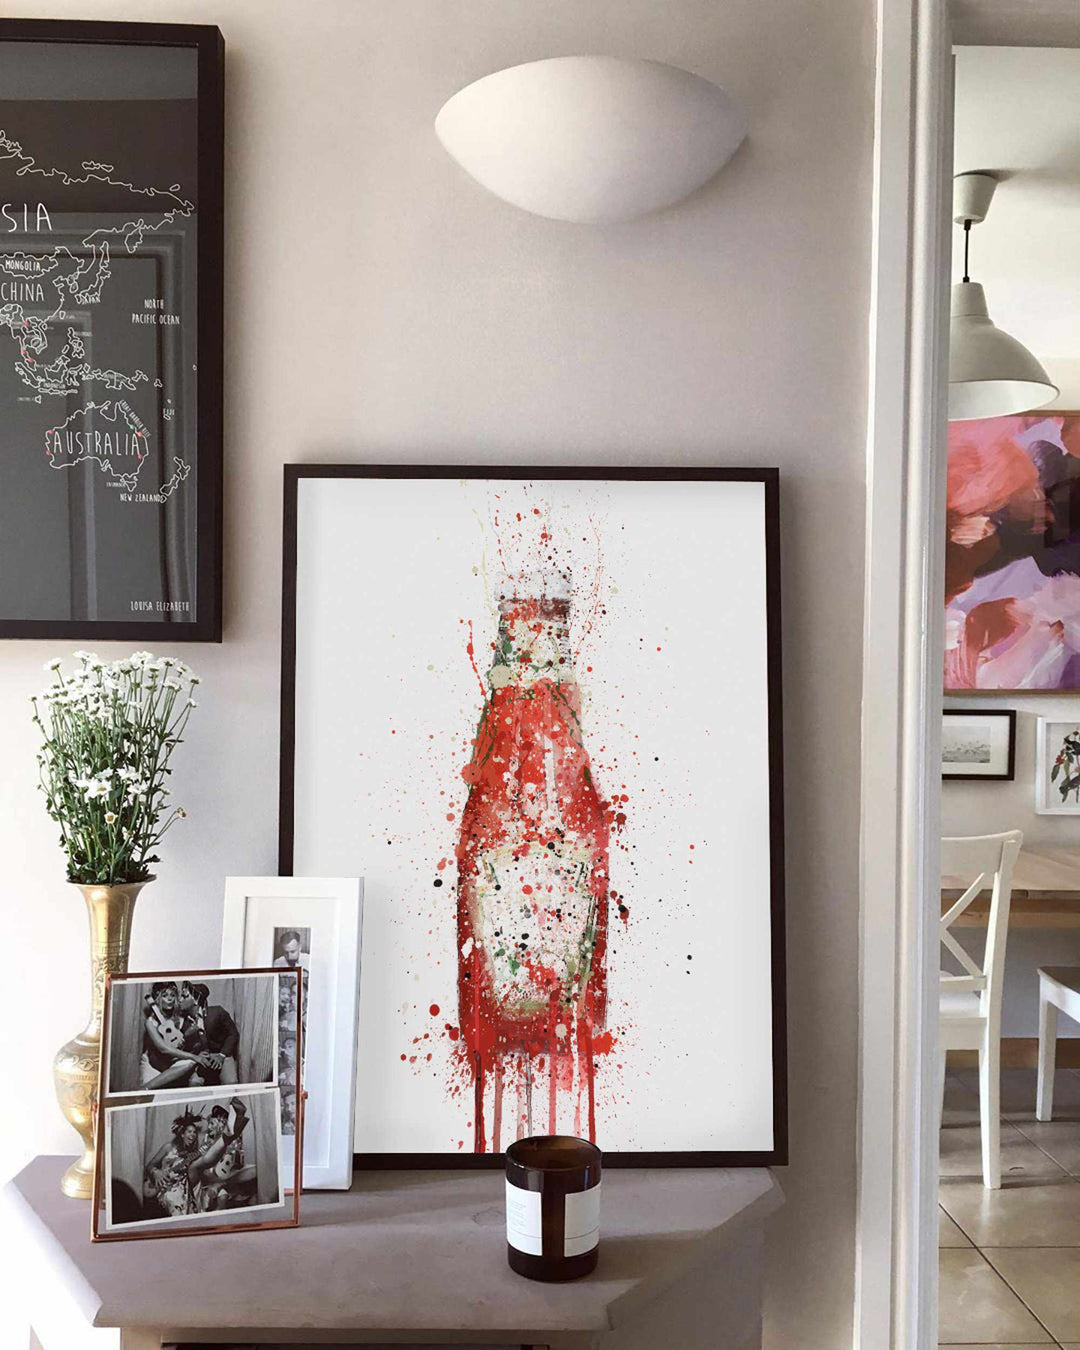 Tomaten-Ketchup-Wand-Kunstdruck